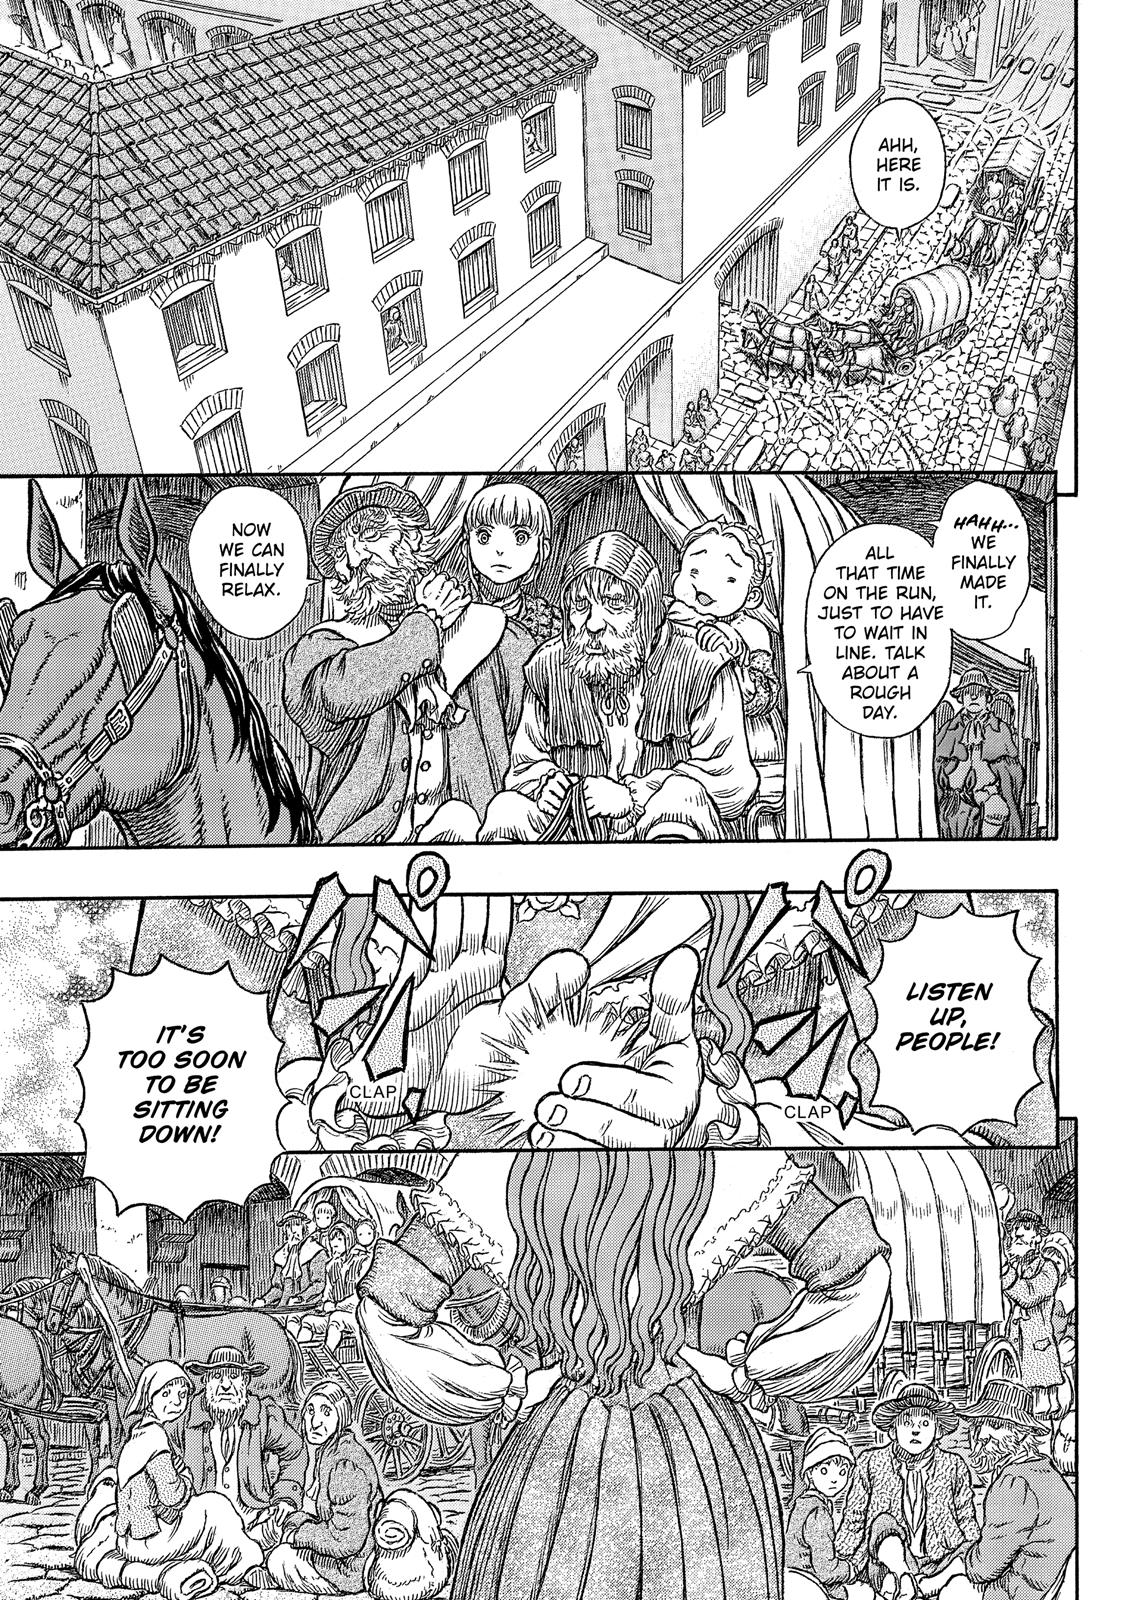 Berserk Manga Chapter 334 image 20